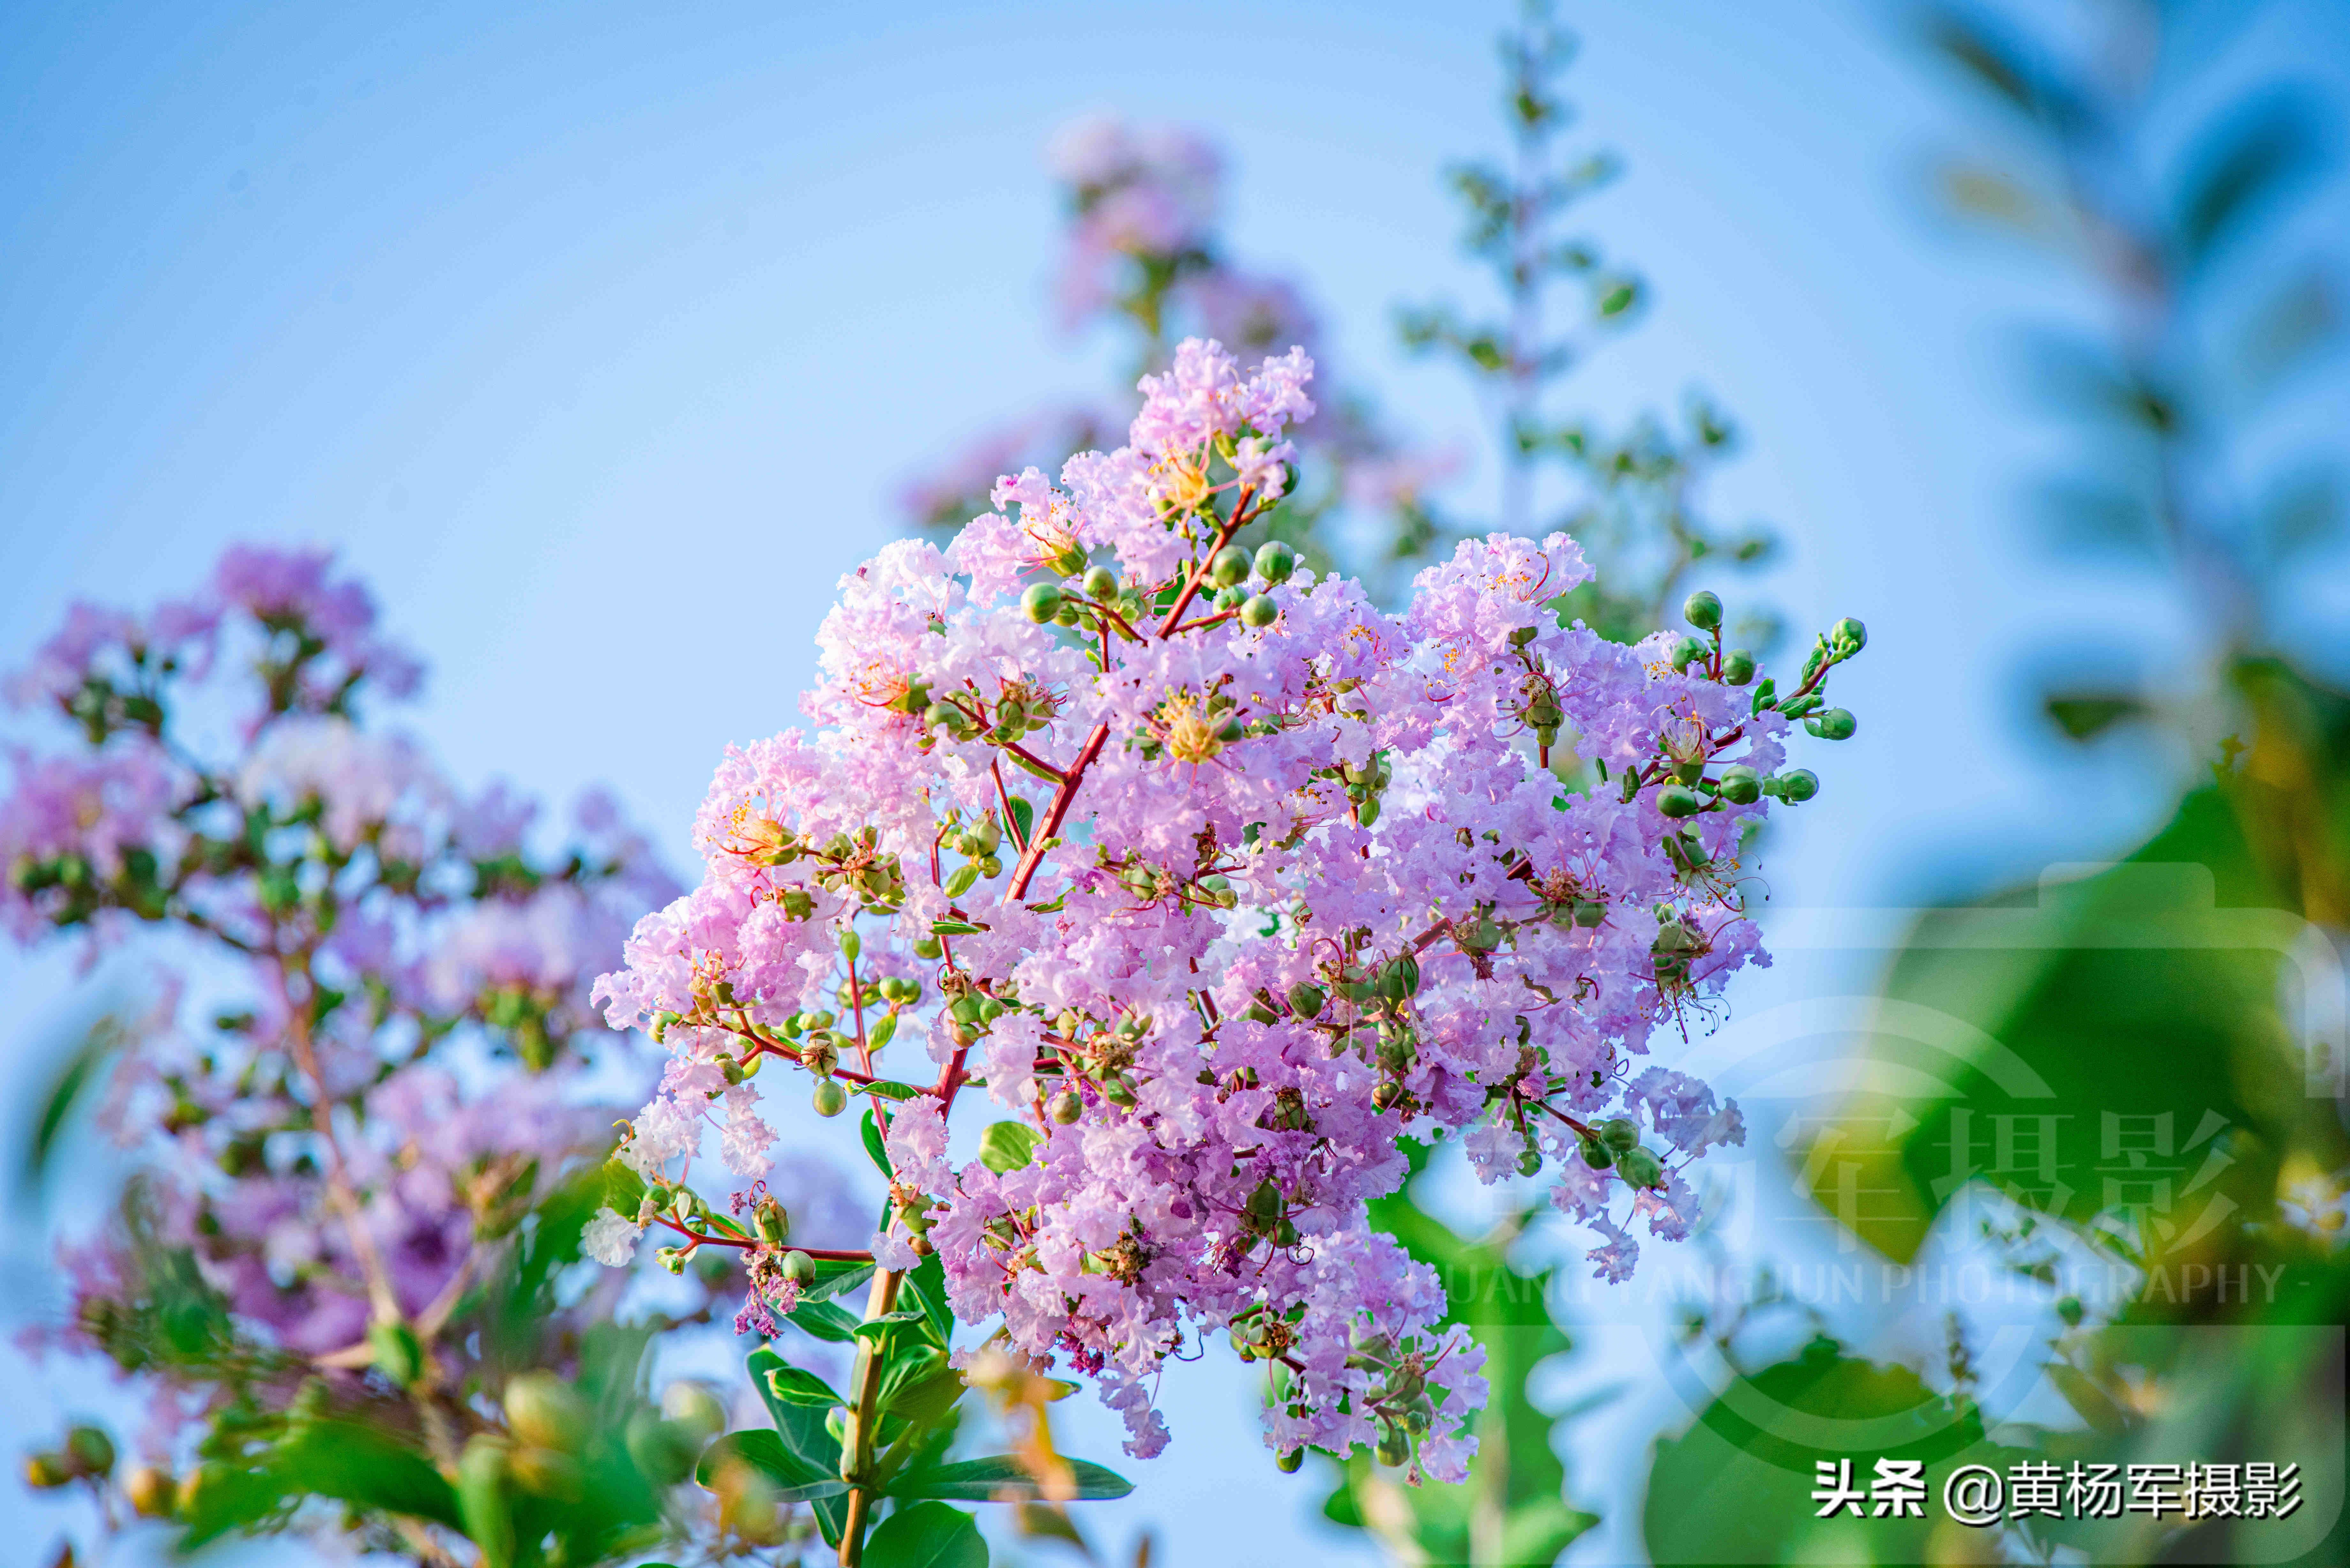 六月美丽绚烂的紫薇花 清新淡雅 蓝色天空下紫粉色的花朵很美 资讯咖